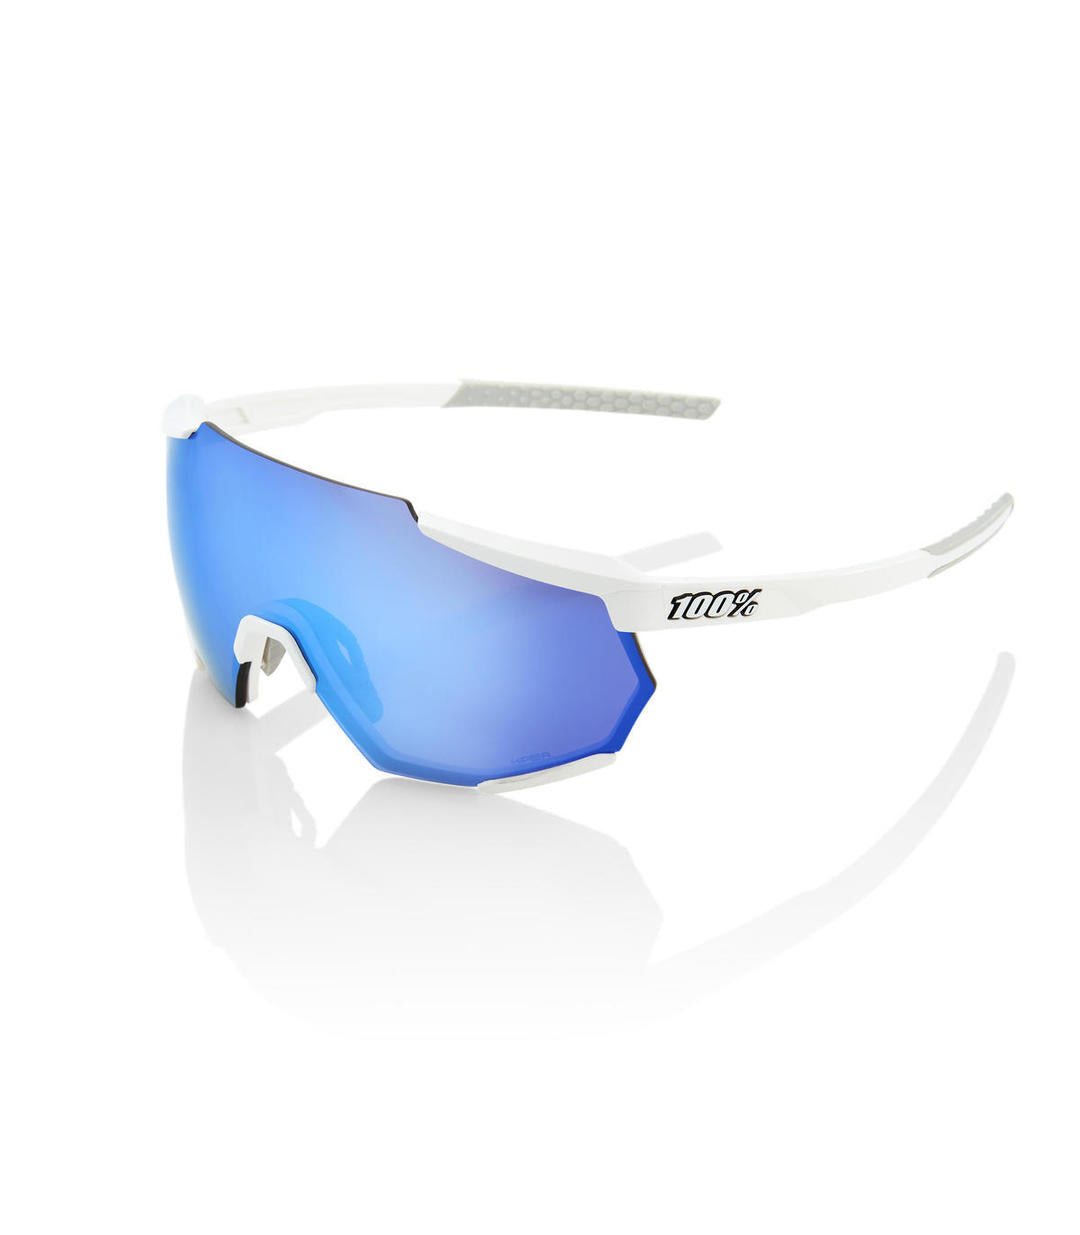 RIDE 100% Gafas de Sol Racetrap - Matte White HiPER Blue Multilayer Mirror Lens